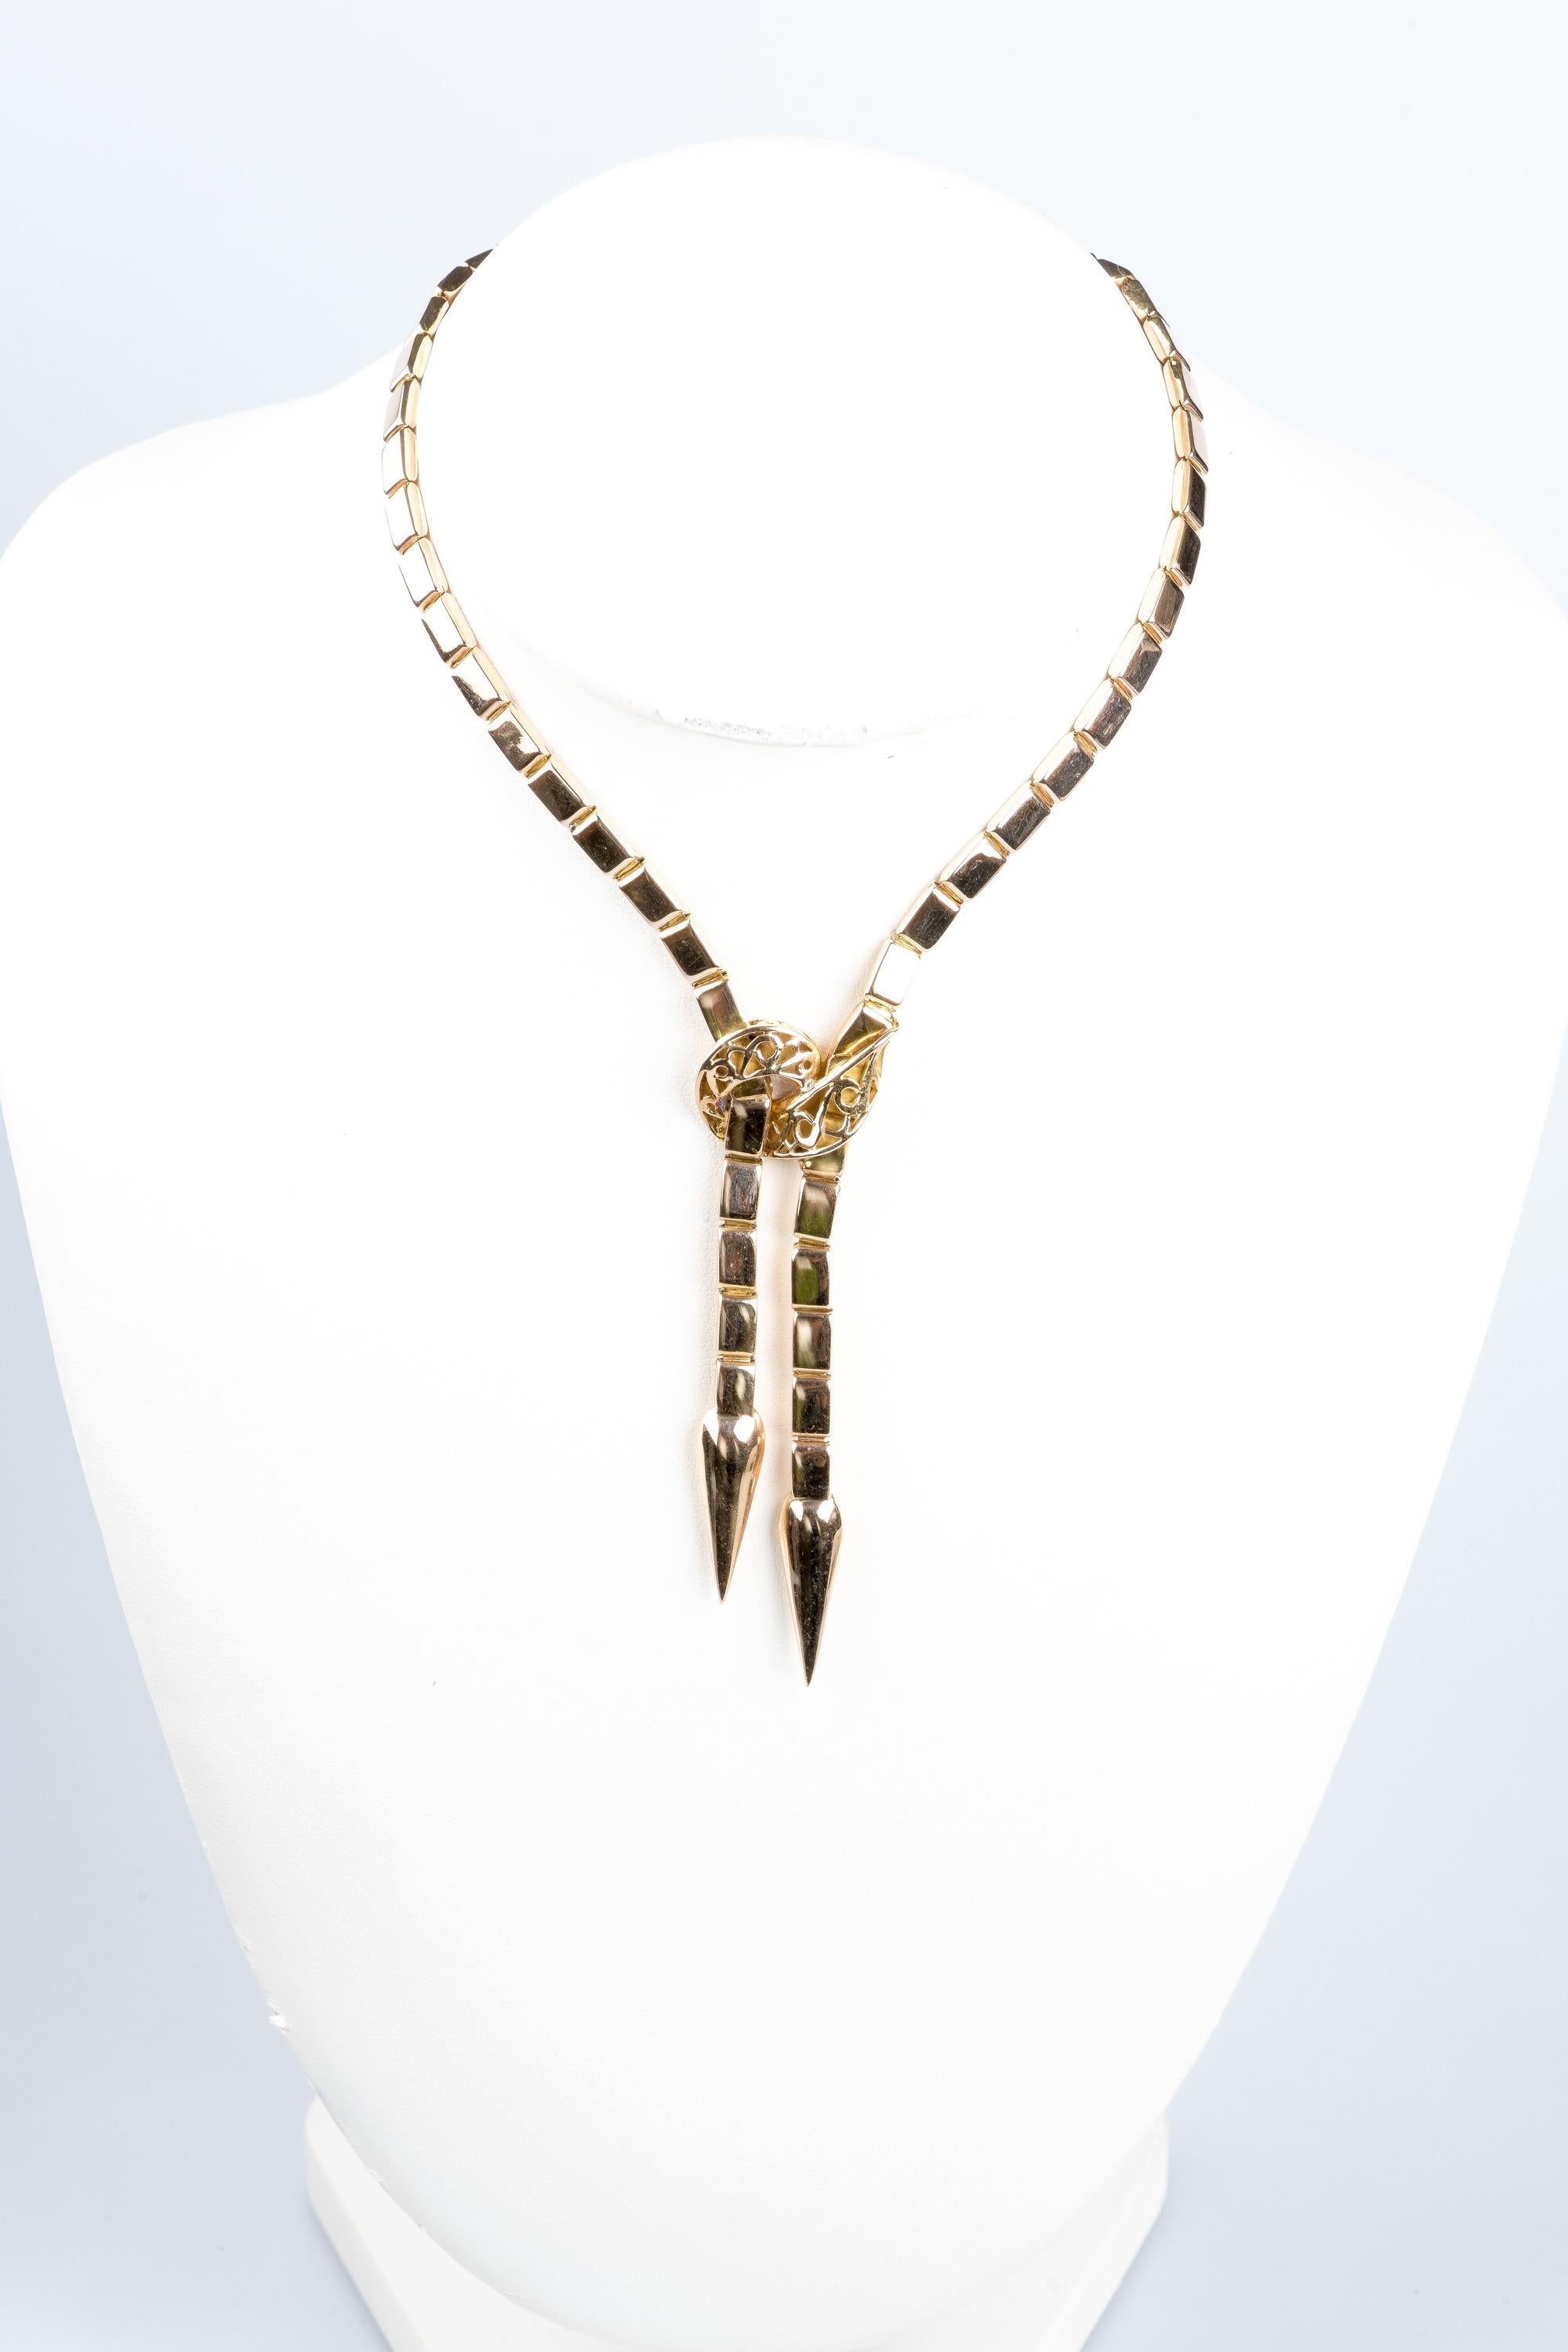 Halskette im Schlangenstil aus 18 Karat Gelbgold.
Die Halskette besteht aus einer Kette aus flachem Netz.  Diese Halskette ist auf einzigartige Weise gearbeitet, und die Details und ihr untypisches Design verleihen ihr viel Originalität. Ideal für